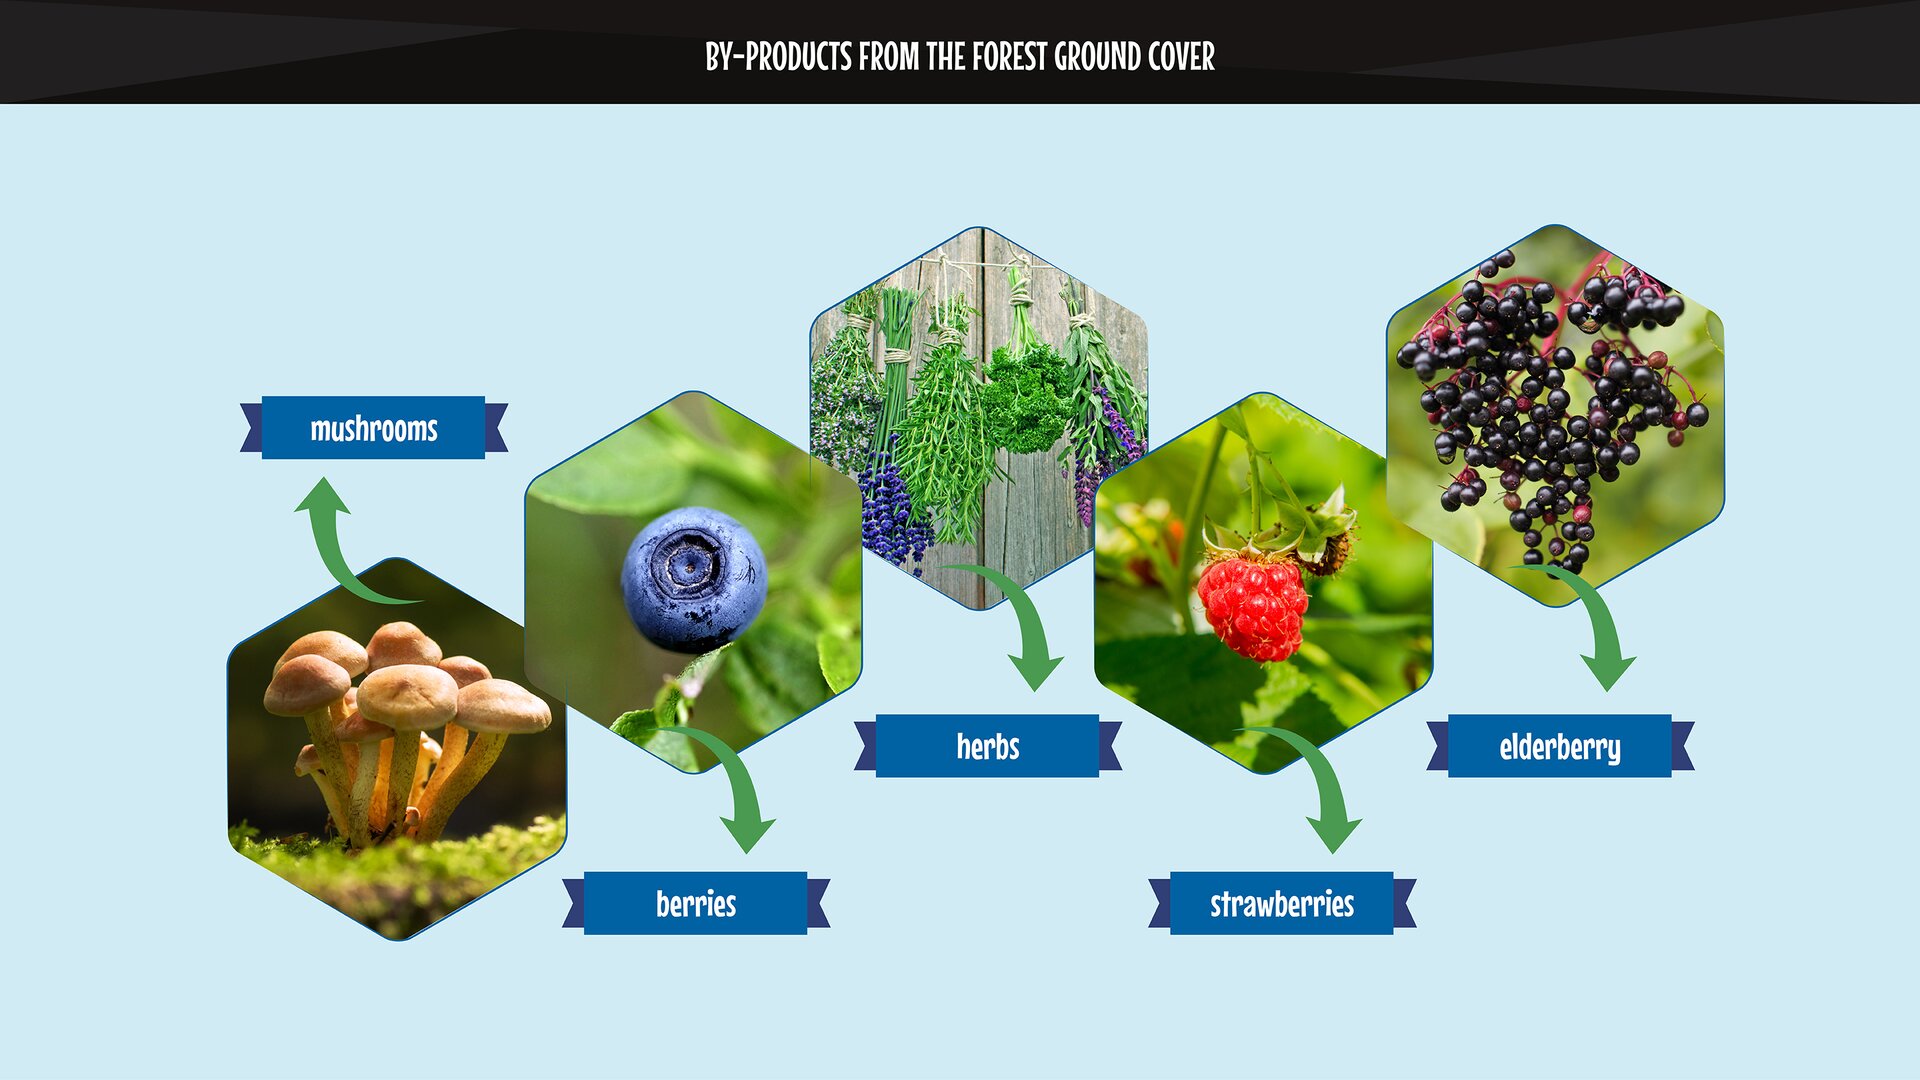 The photo presents by-products from the forest ground cover: mushrooms, herbs, berries, raspberries, elderberry. Grafika przedstawia użytki uboczne z runa leśnego - grzyby, zioła, jagody, maliny, dziki bez.